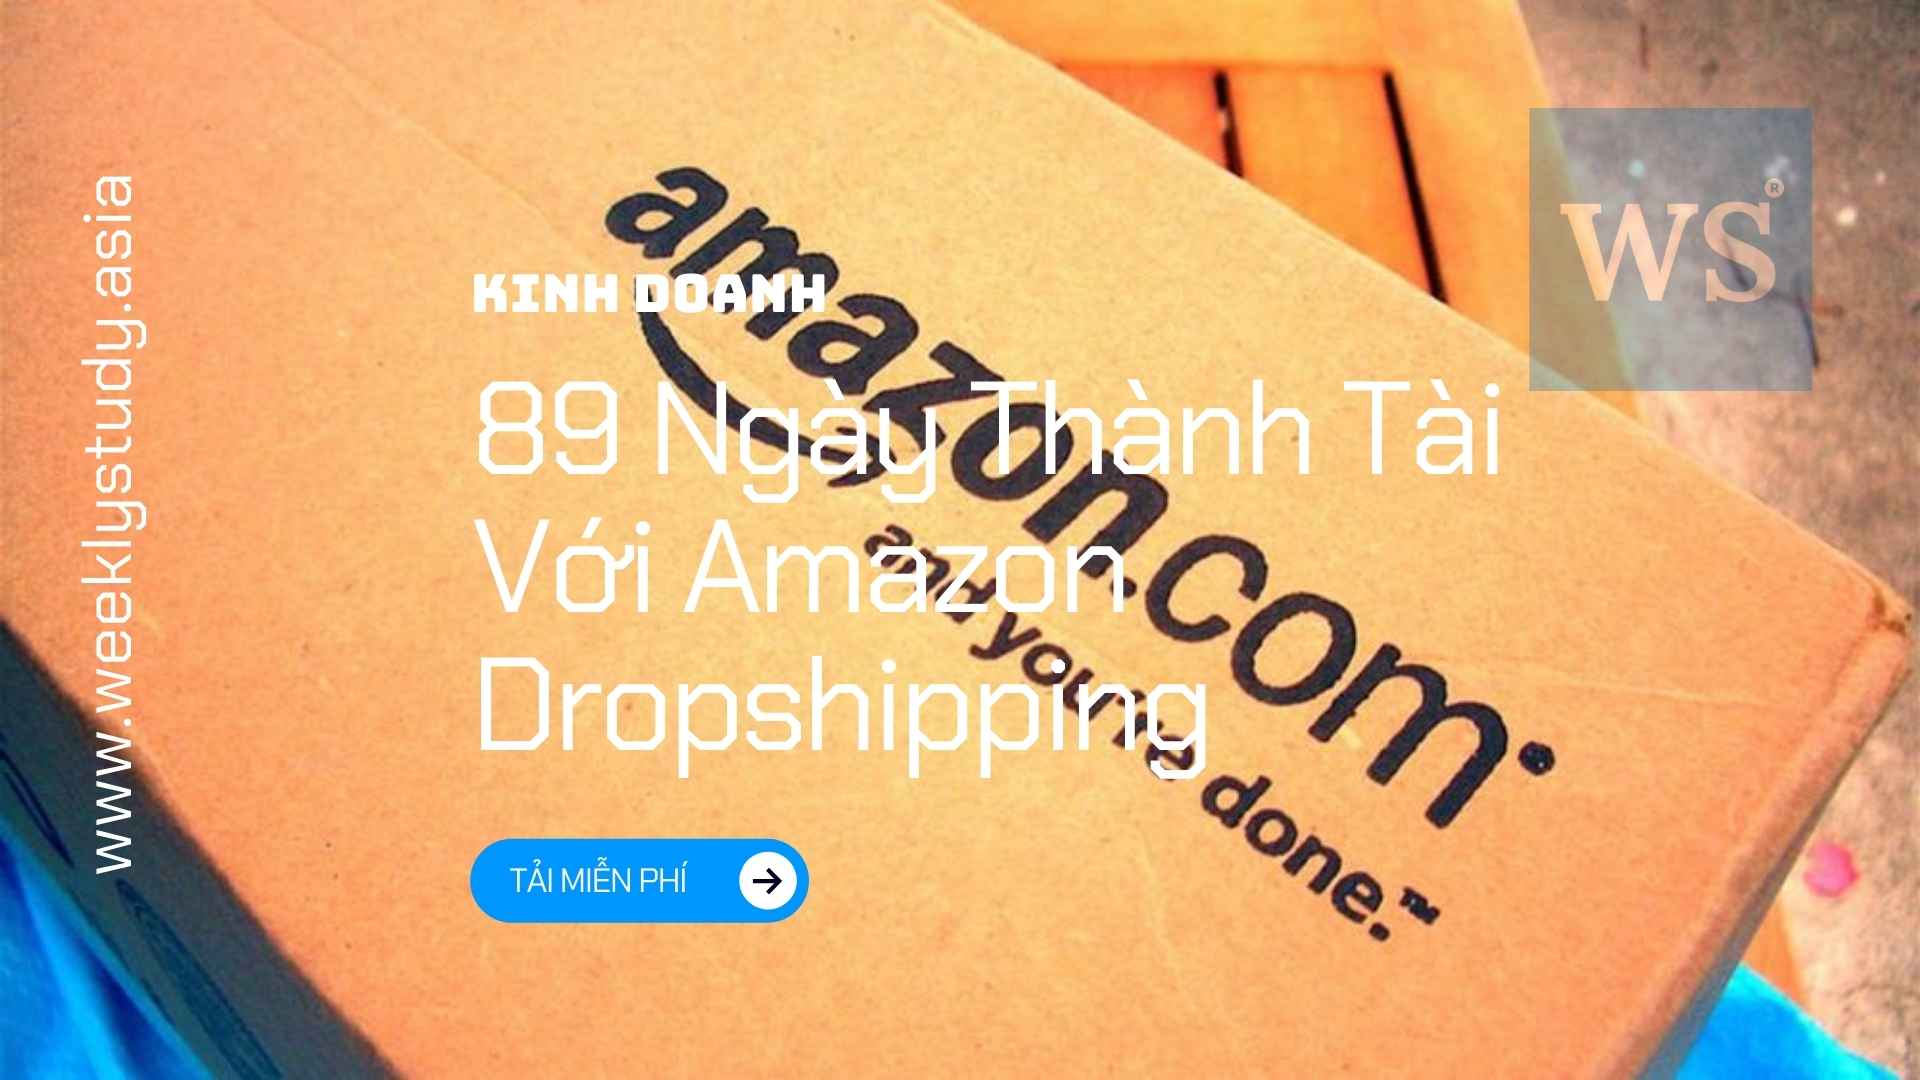 Khóa Học 89 Ngày Thành Tài Với Amazon Dropshipping - Tải miễn phí [B2907V]